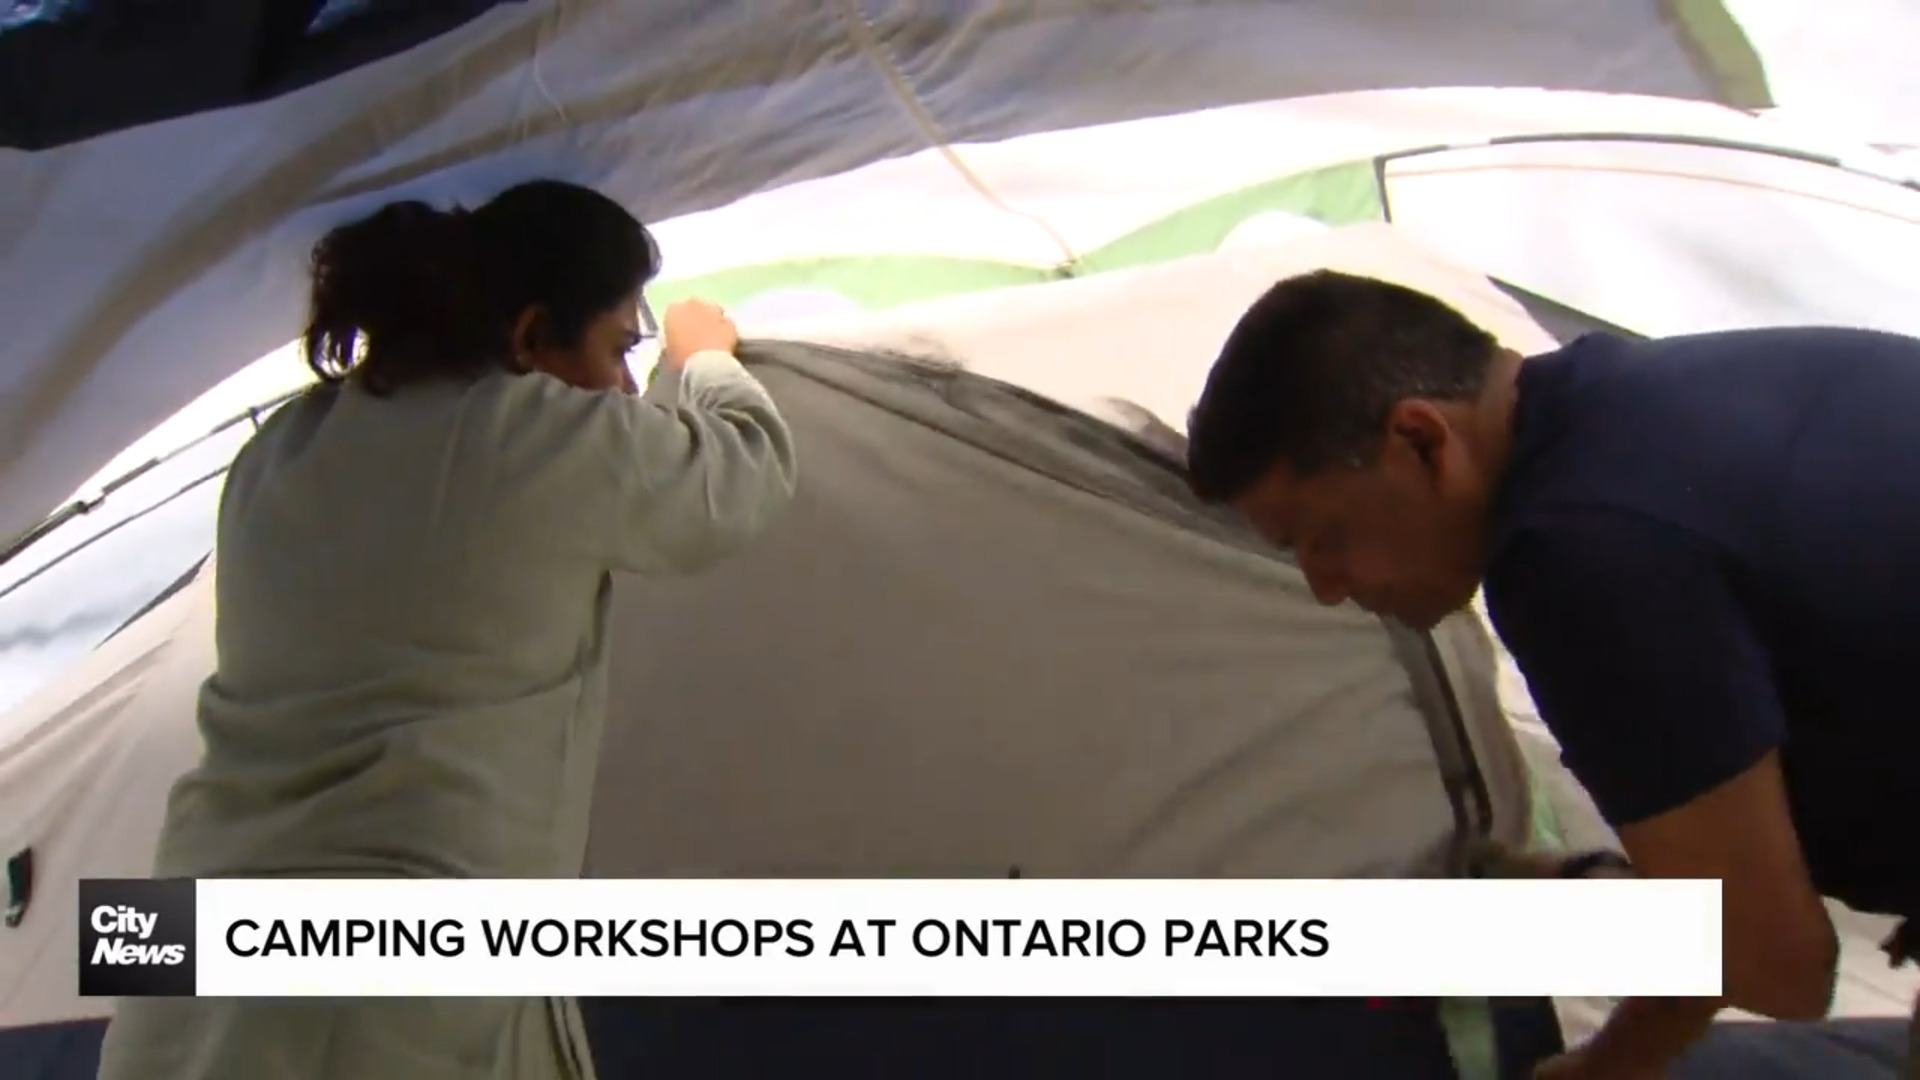 Camping workshops being held at Ontario Parks properties